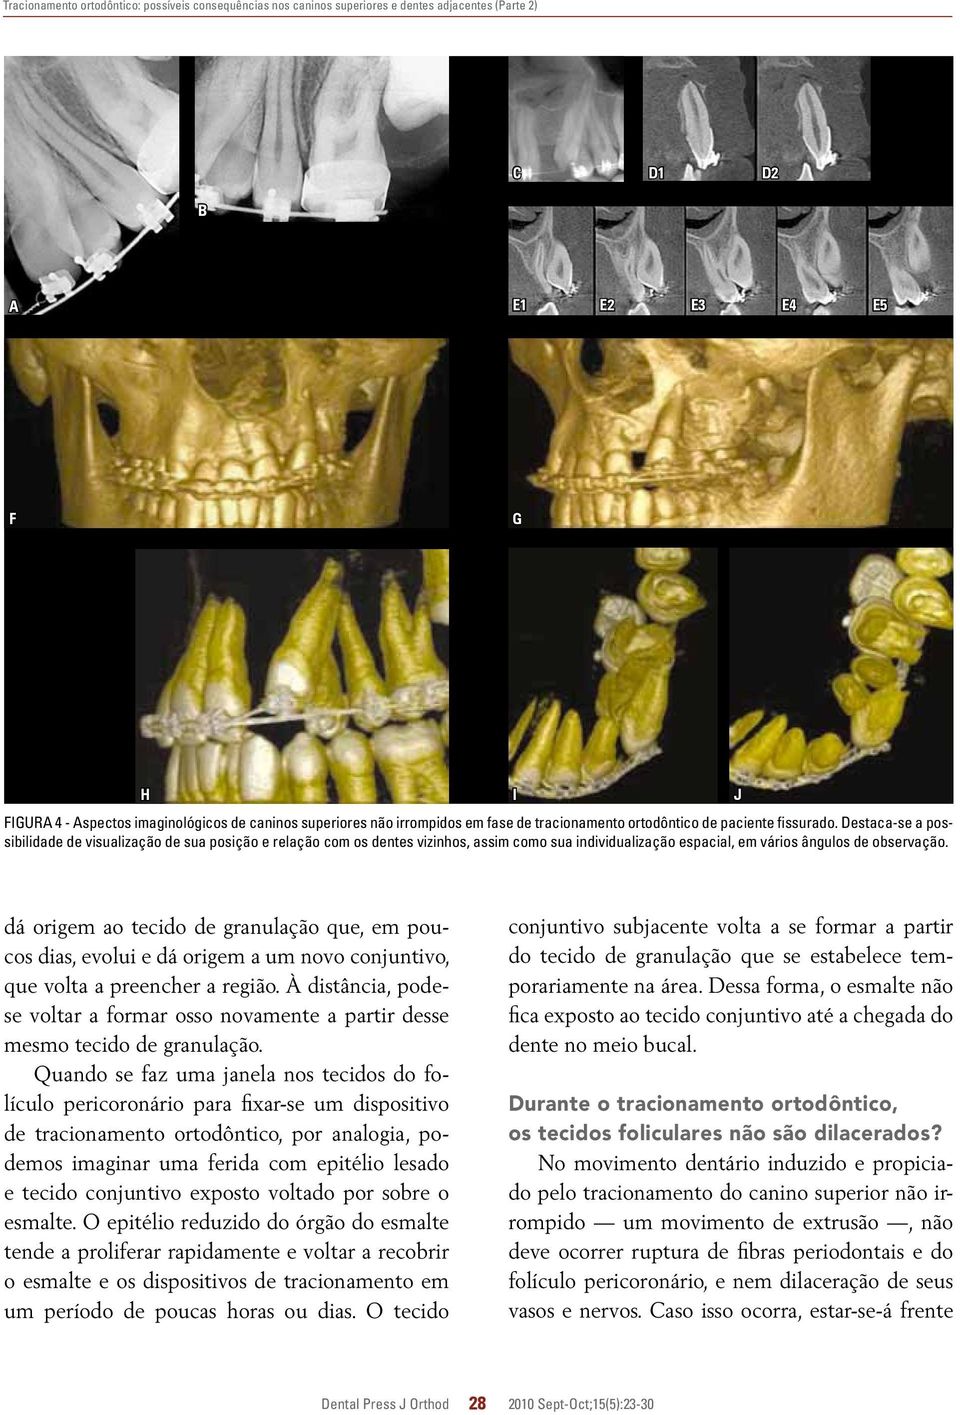 estaca-se a possibilidade de visualização de sua posição e relação com os dentes vizinhos, assim como sua individualização espacial, em vários ângulos de observação.